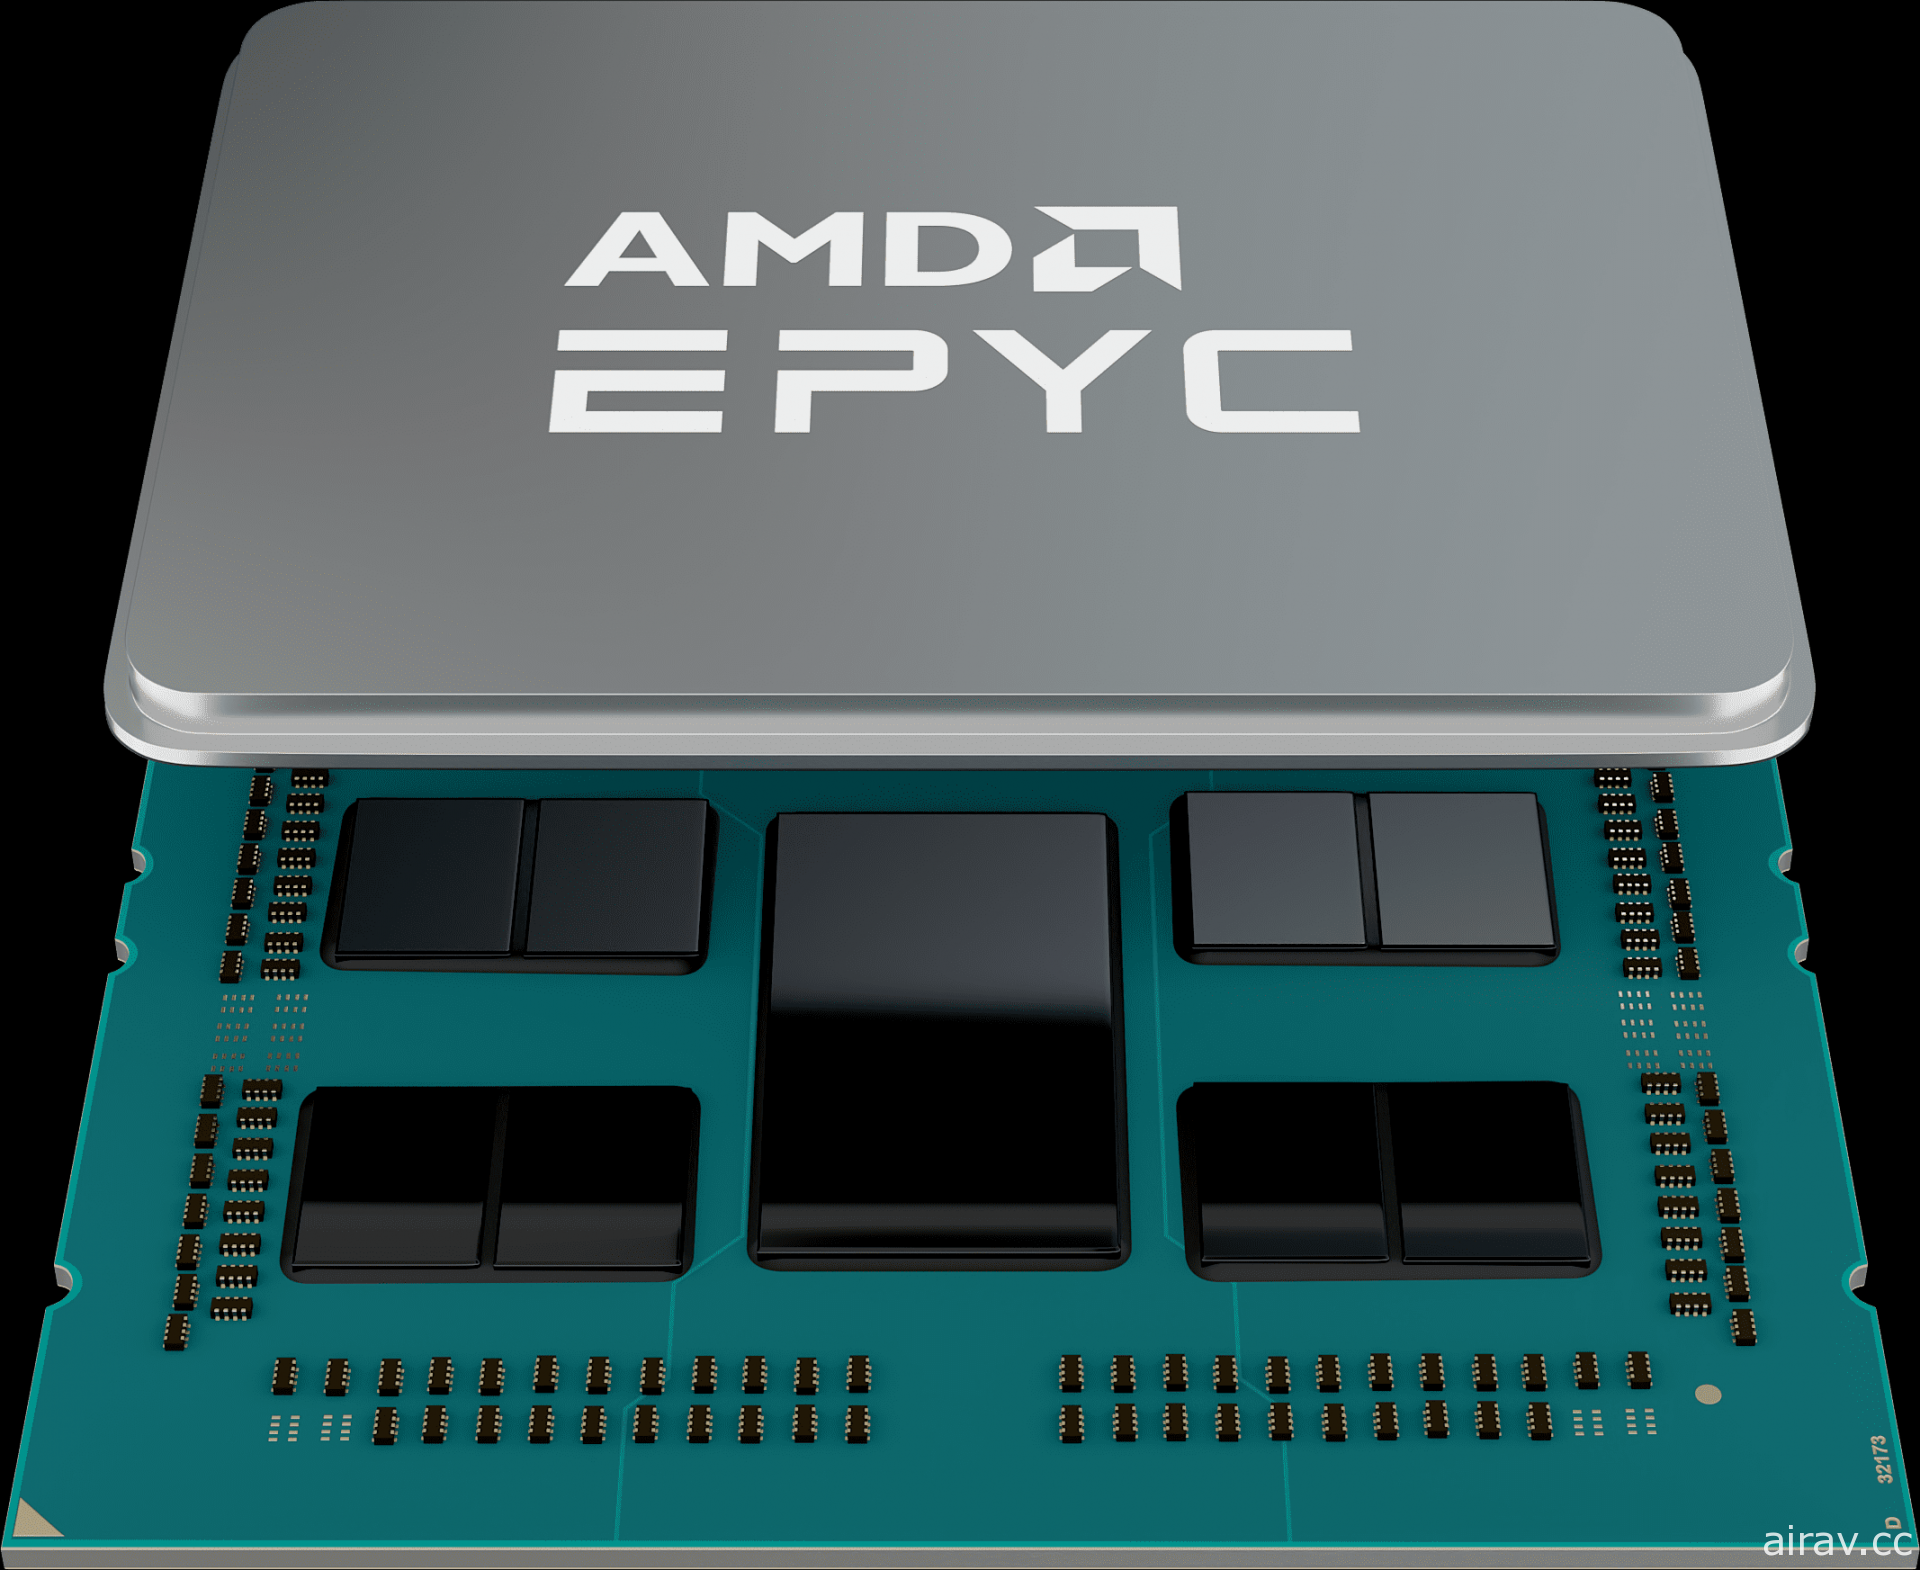 AMD 發表全新 EPYC 7003 系列 CPU　IPC 效能提升高達 19%